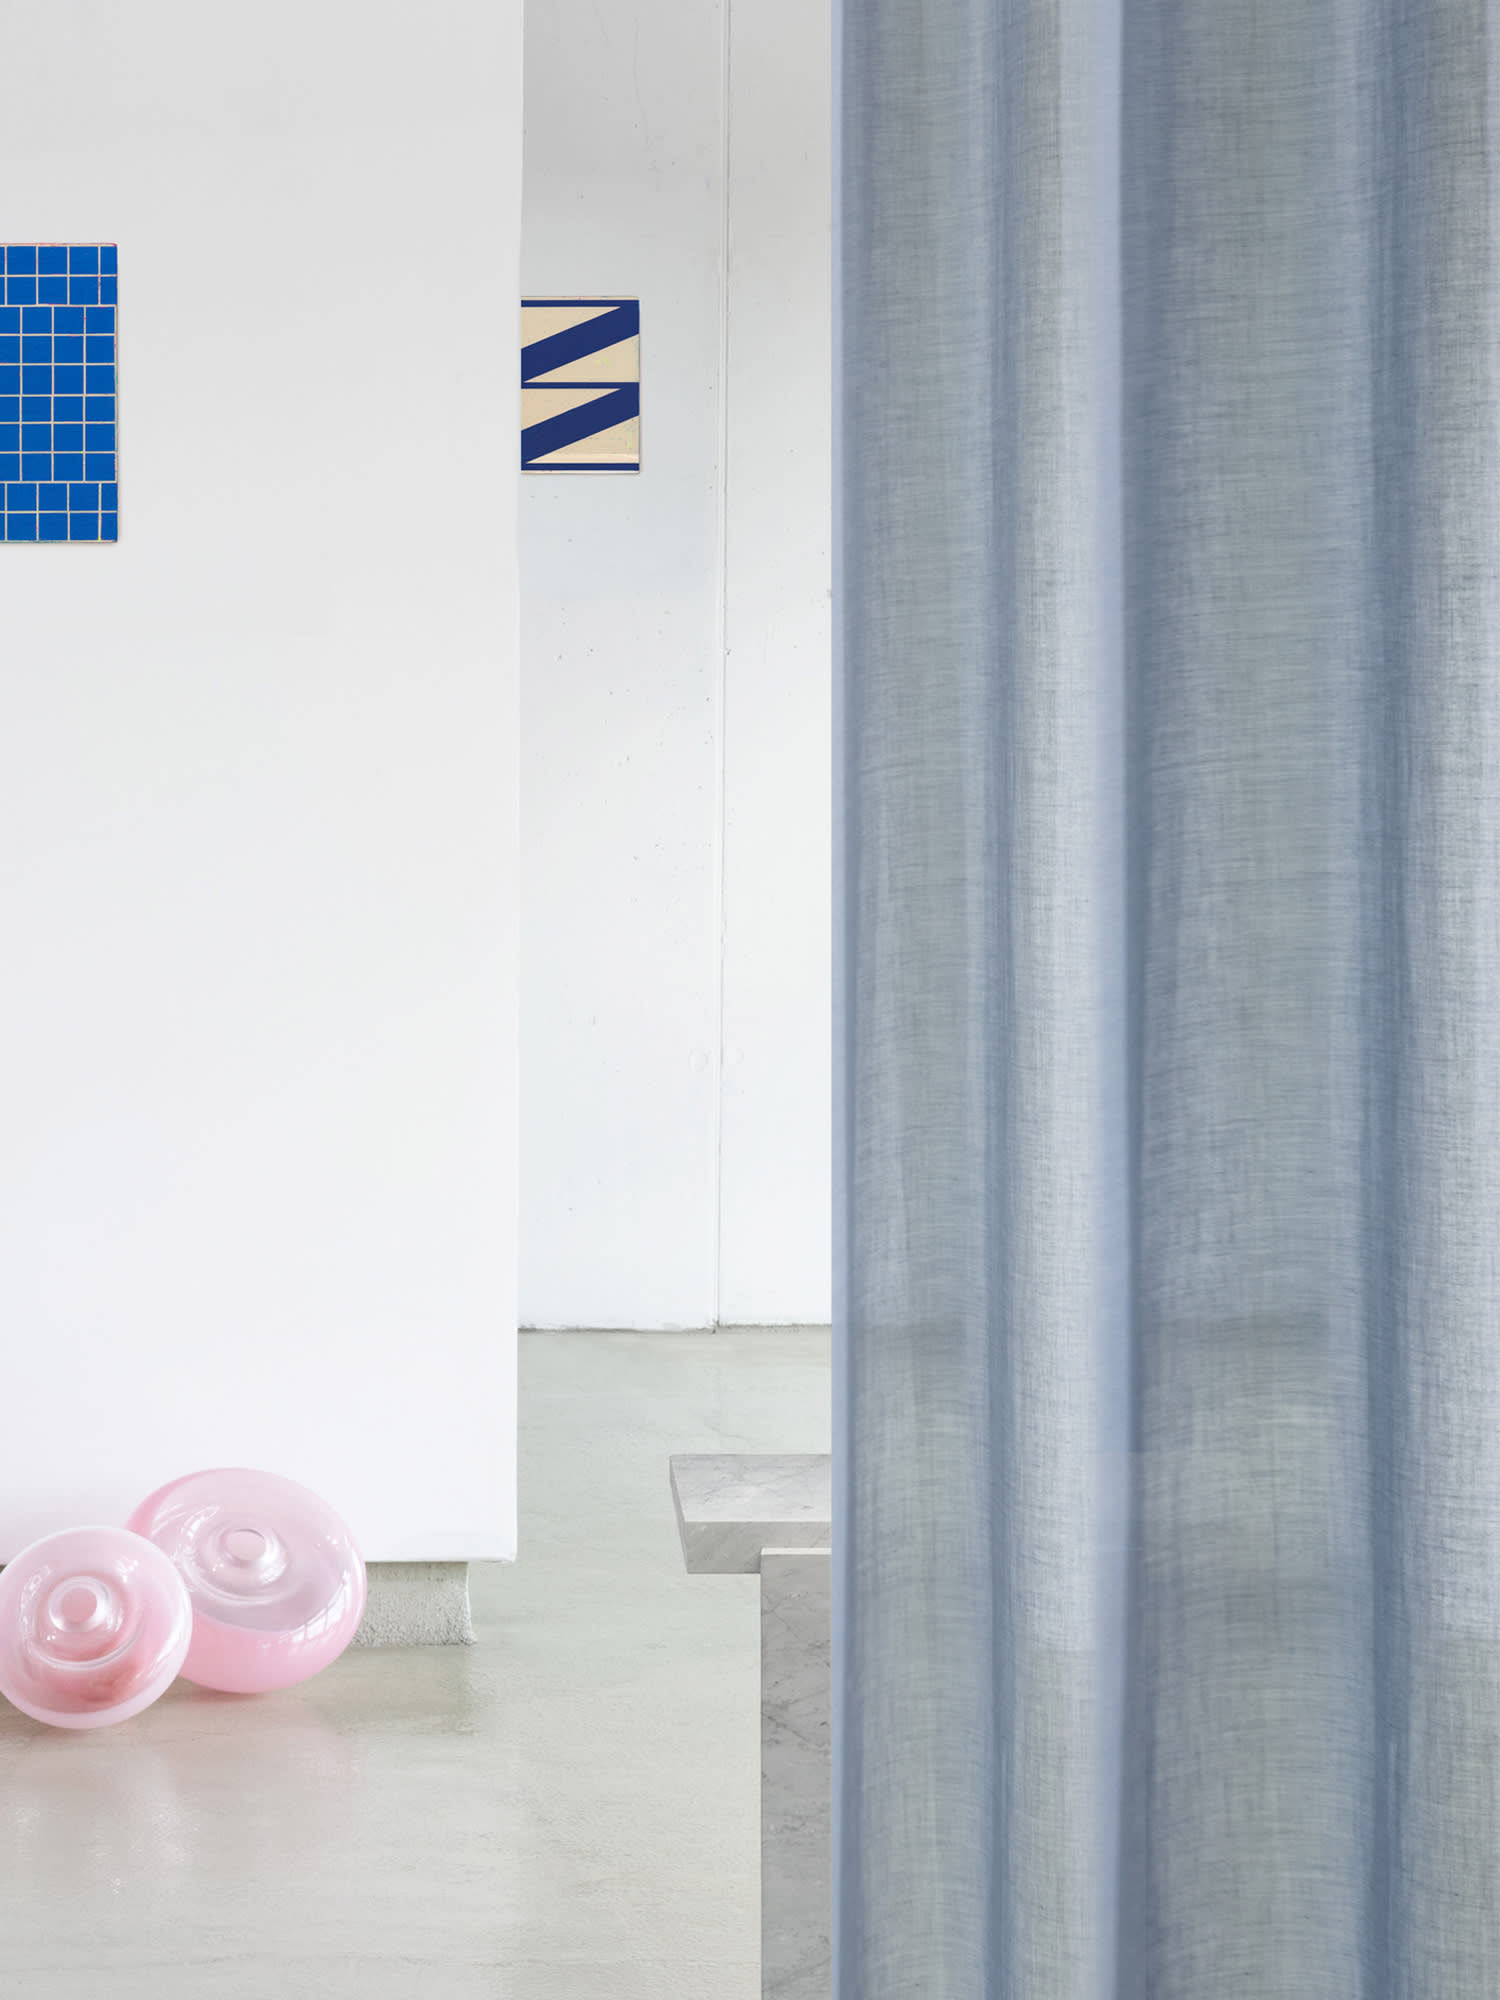 Kampagnenfotografie eines hellen Raumes mit einem blauen Vorhang im Vordergrund. Im Hintergrund sind weitere Stoffsamples zu sehen und auf dem Boden liegen rosane Lampenschirme.